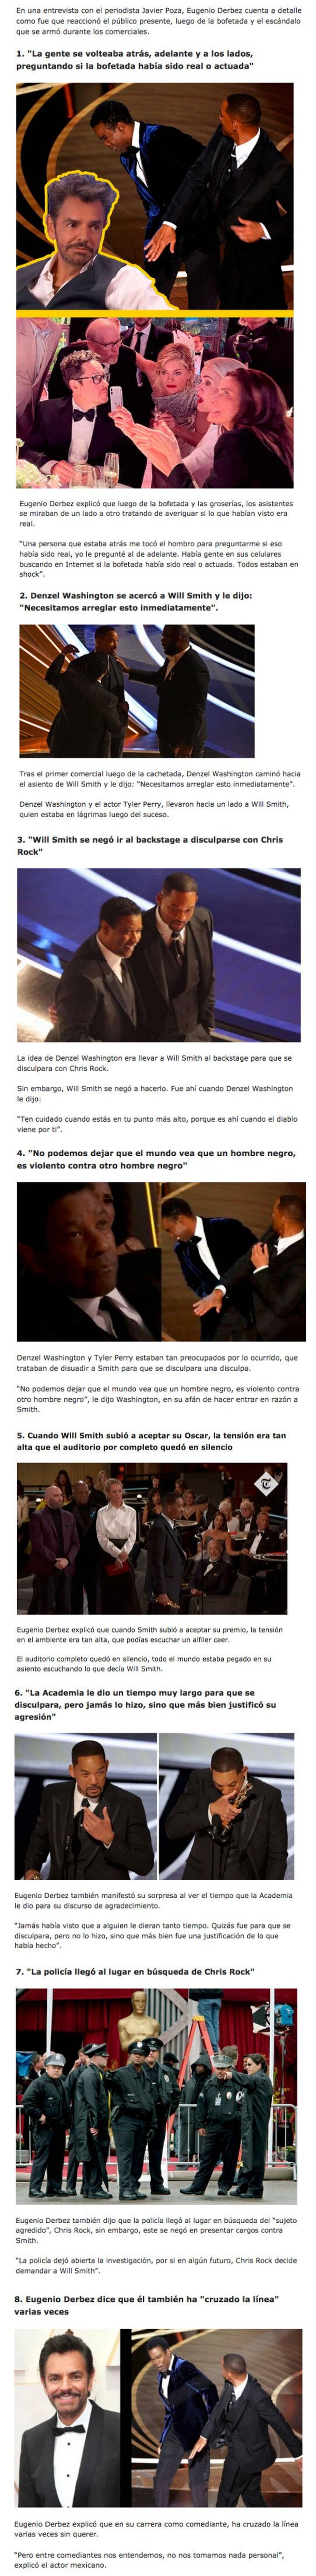 GALERÍA: Eugenio Derbez exolica cómo reaccionó el público de Los Oscars durante los anuncios, después del bofetón de Will Smith